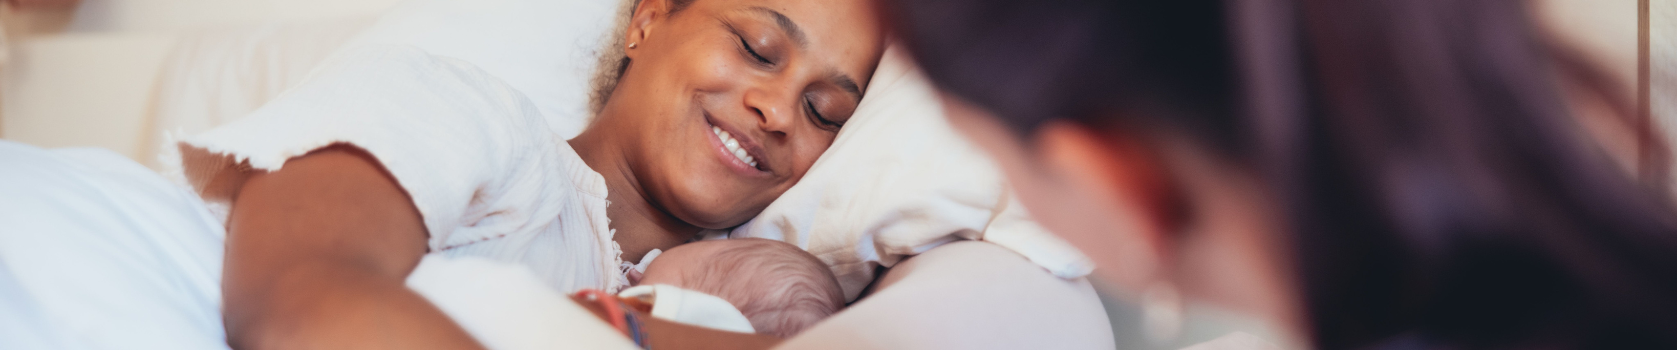 Mütterpflege im Wochenbett emotionale Unterstützung